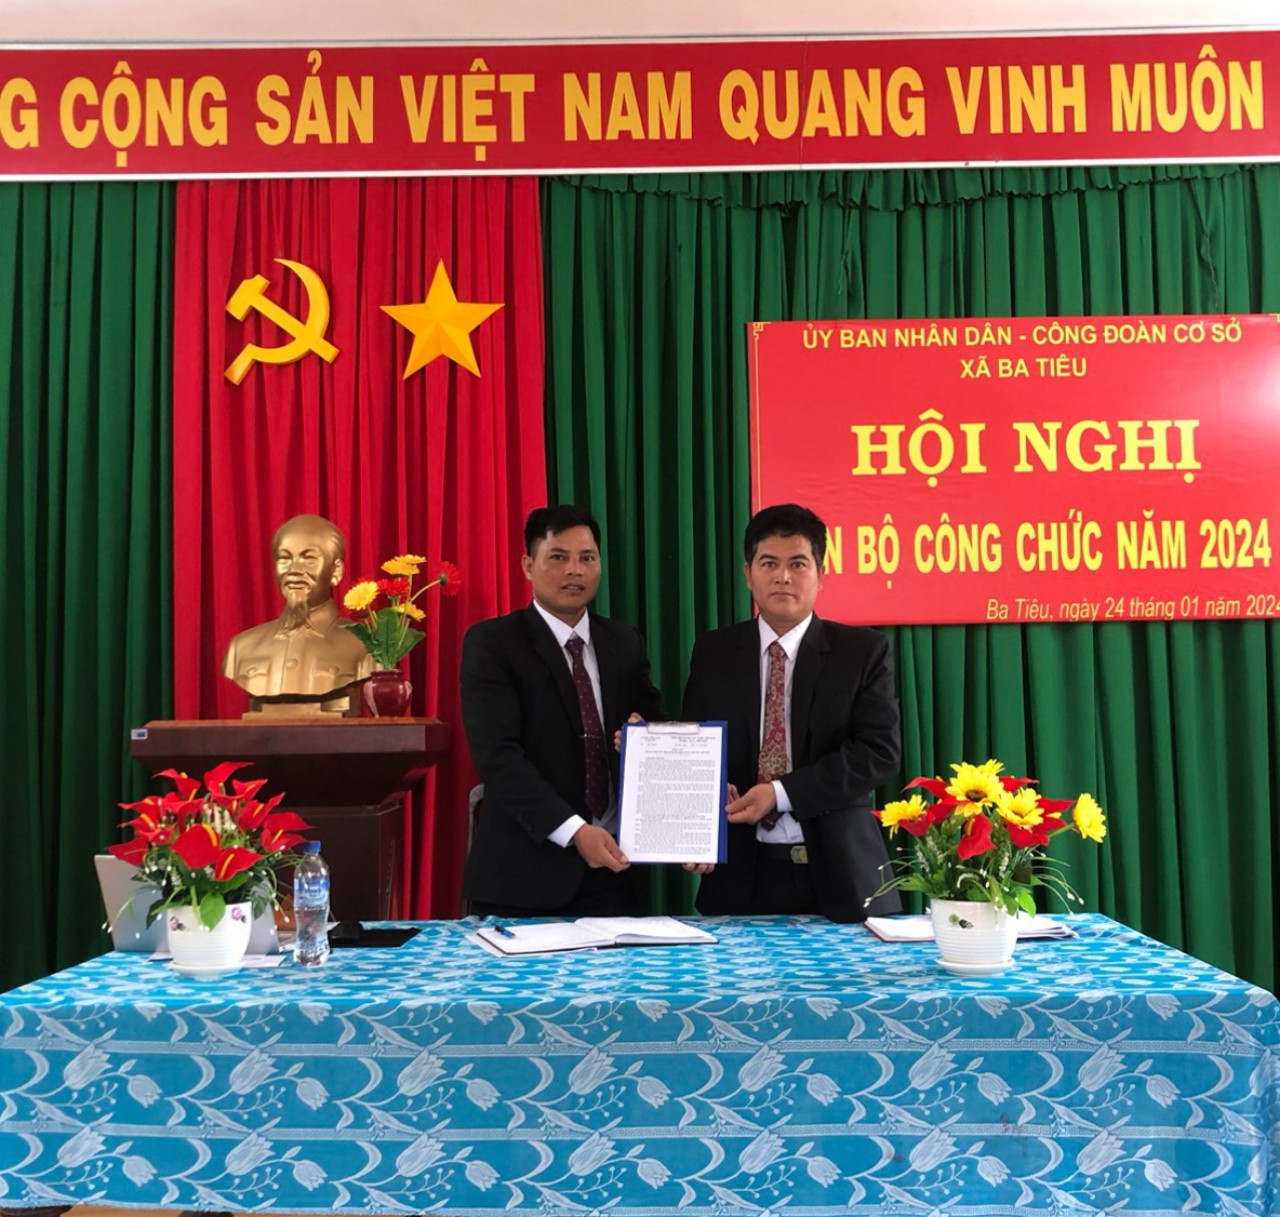 Ủy ban nhân dân xã Ba Tiêu phối hợp với Công đoàn cơ sở xã Ba Tiêu tổ chức Hội nghị cán bộ, công chức năm 2024.